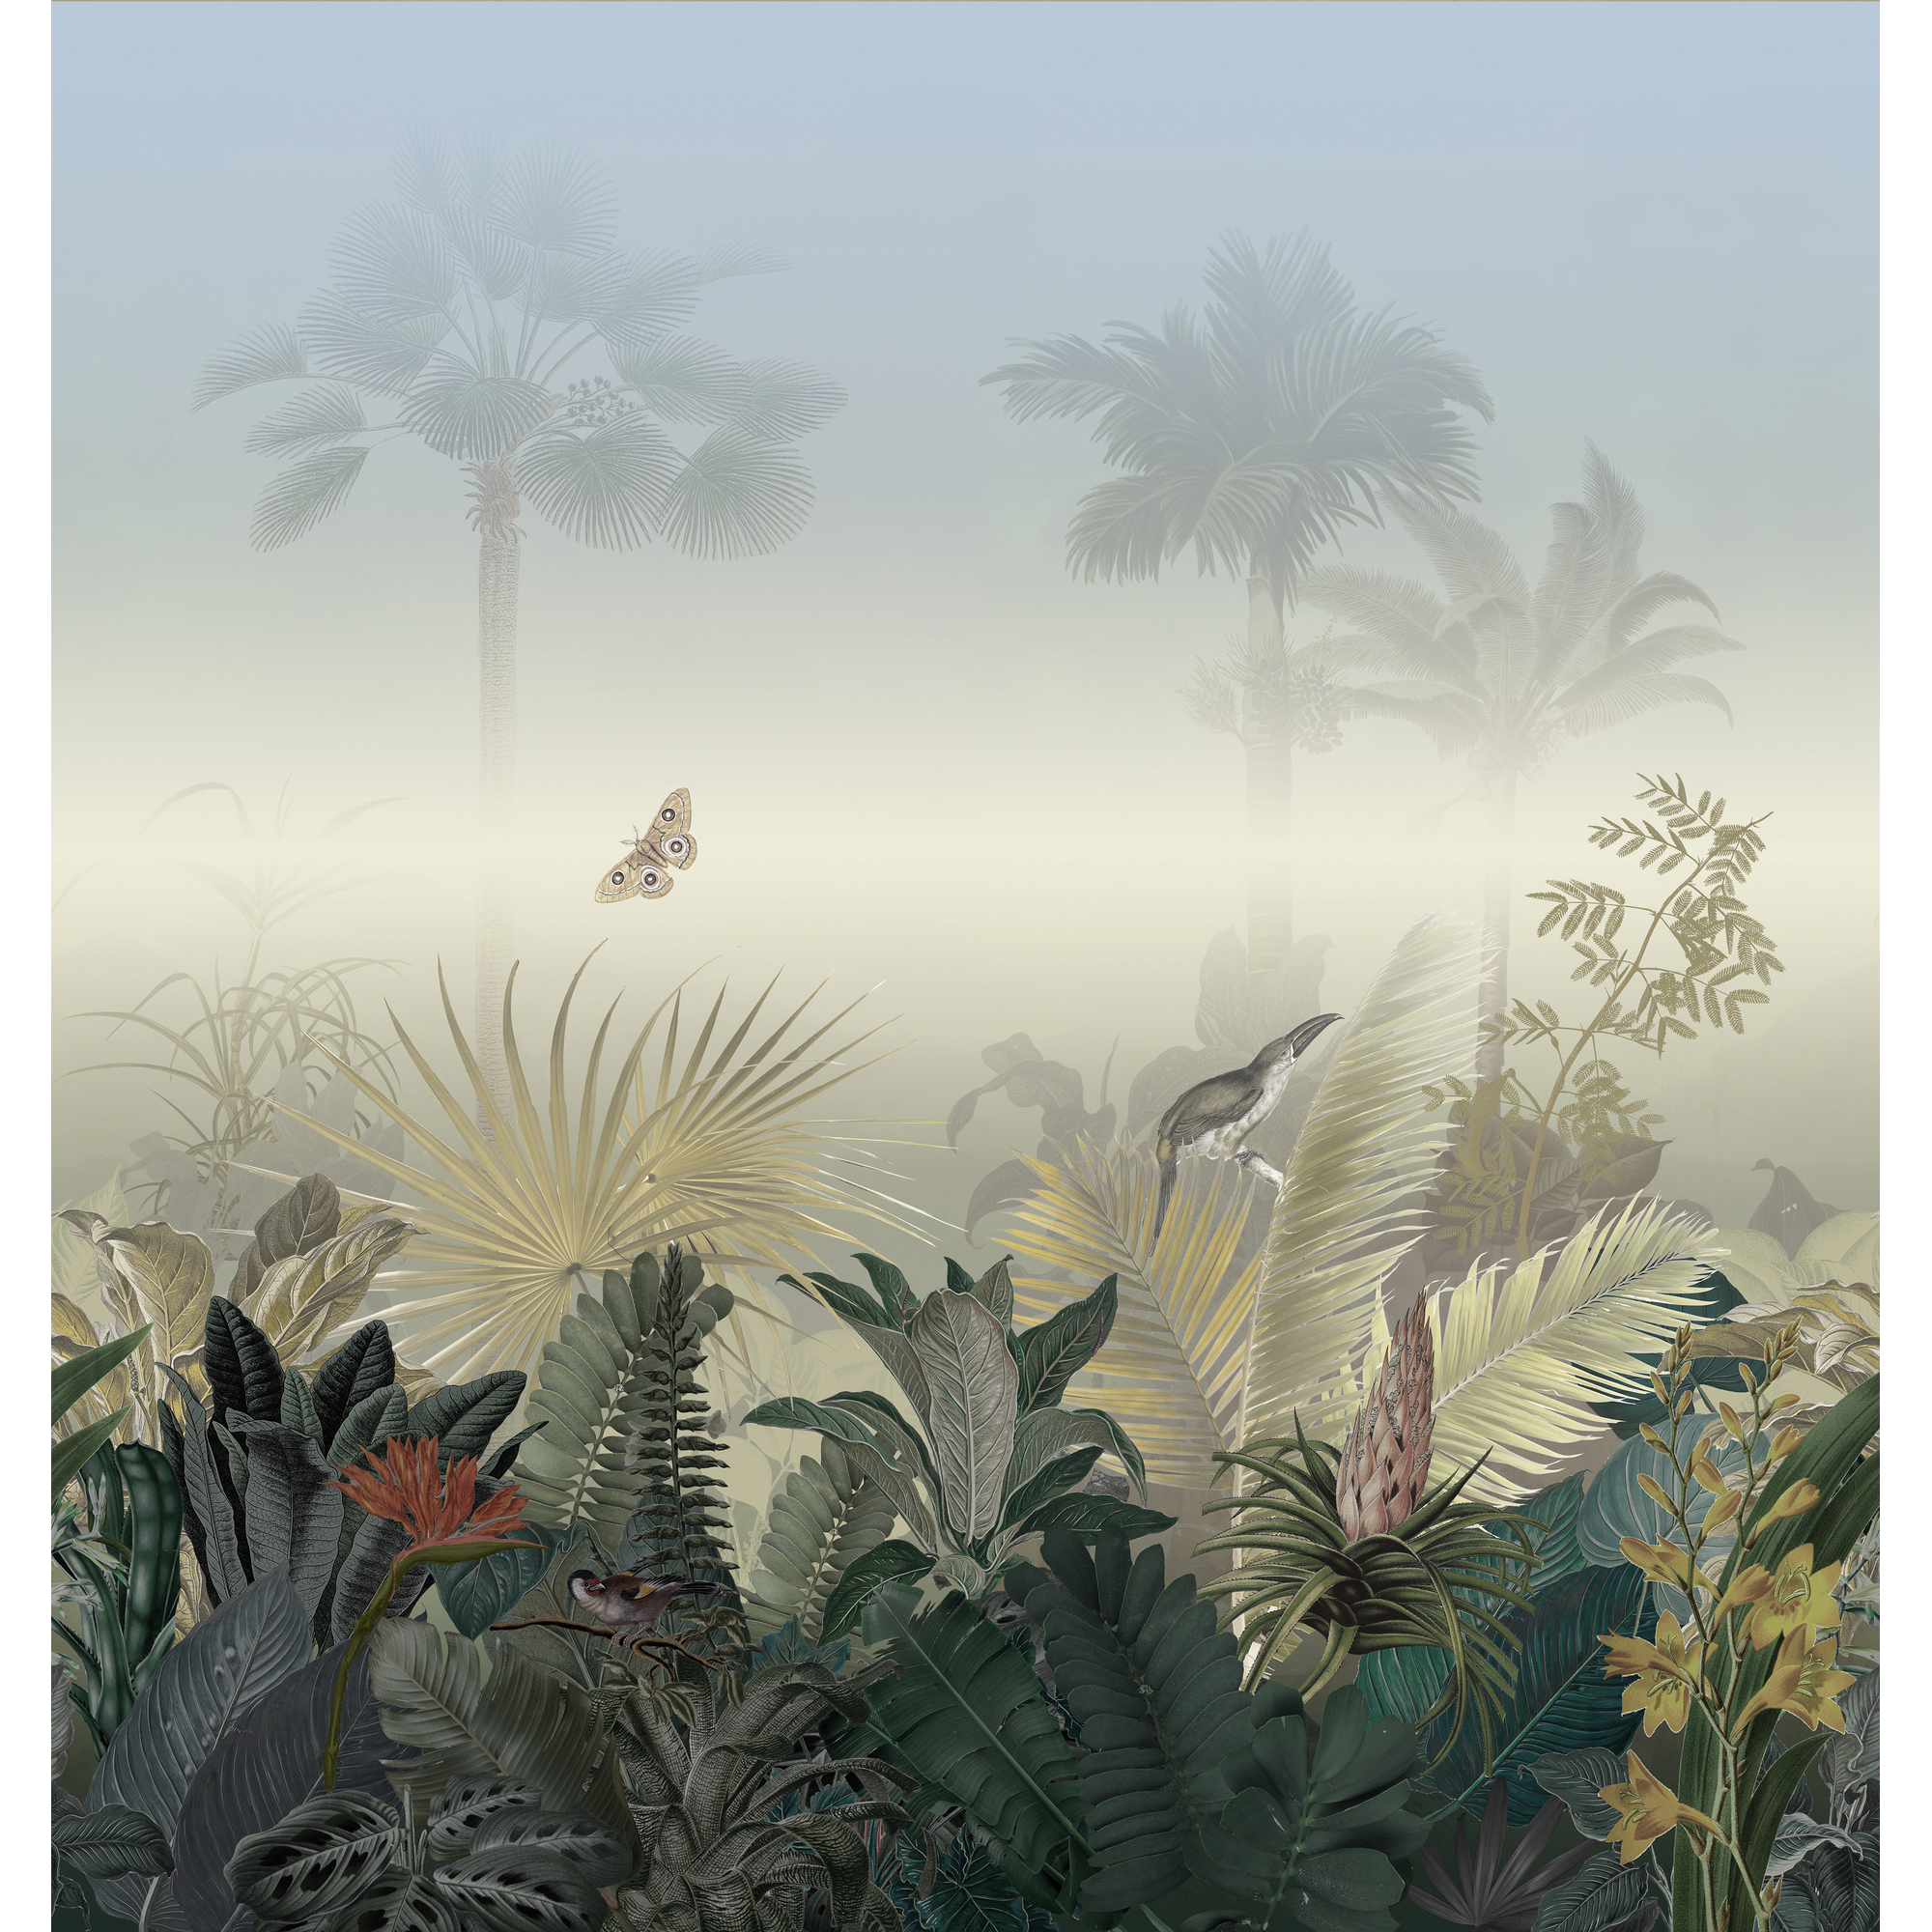 Vliestapete 'The Wall II' Palmen Nebel beige 5-teilig 265 x 280 cm + product picture